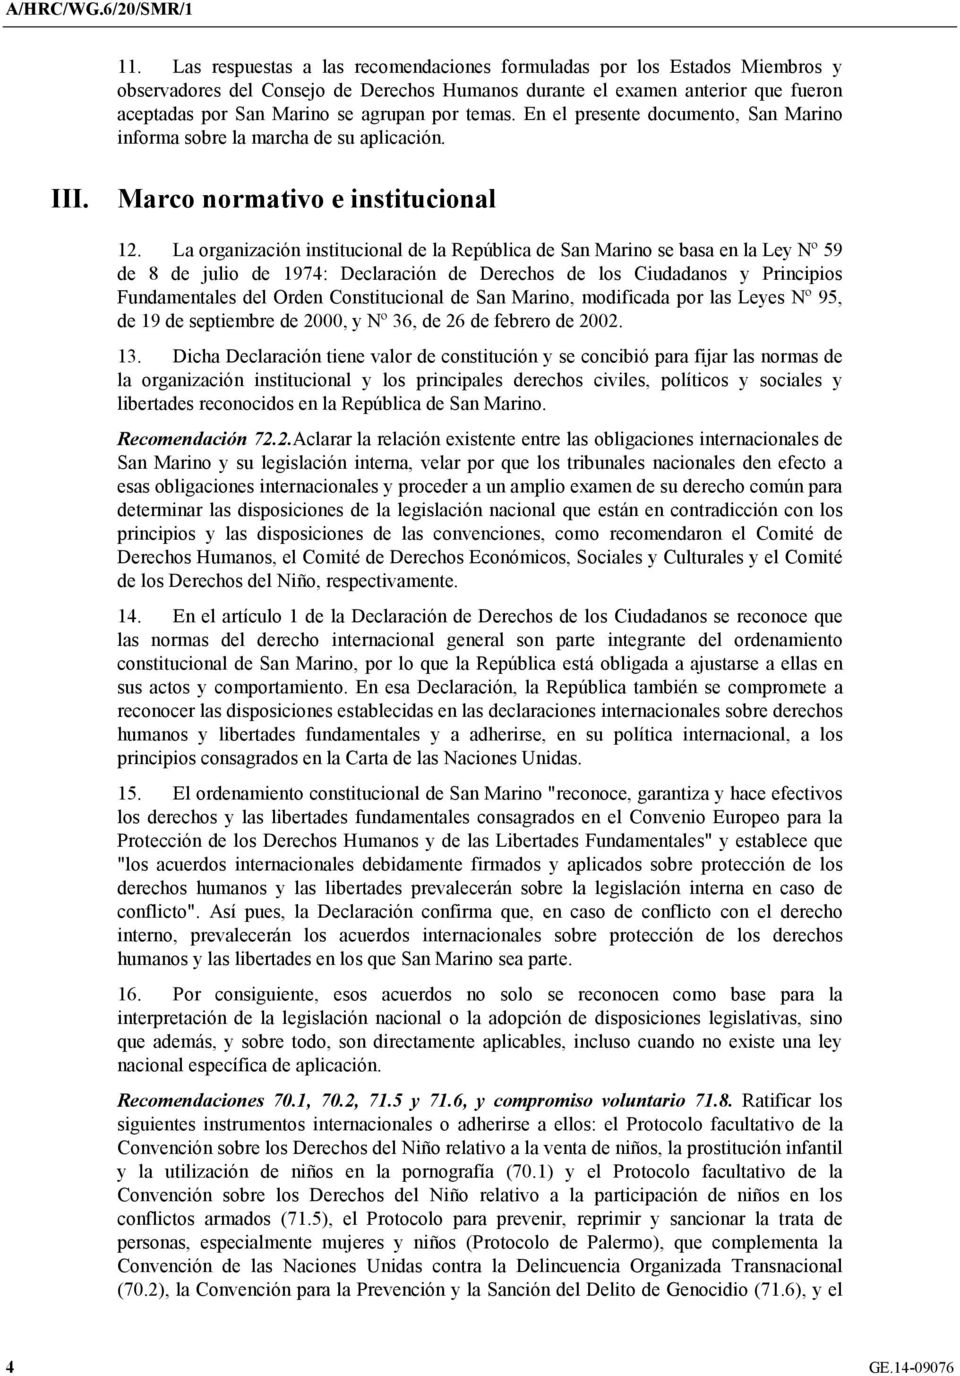 La organización institucional de la República de San Marino se basa en la Ley Nº 59 de 8 de julio de 1974: Declaración de Derechos de los Ciudadanos y Principios Fundamentales del Orden